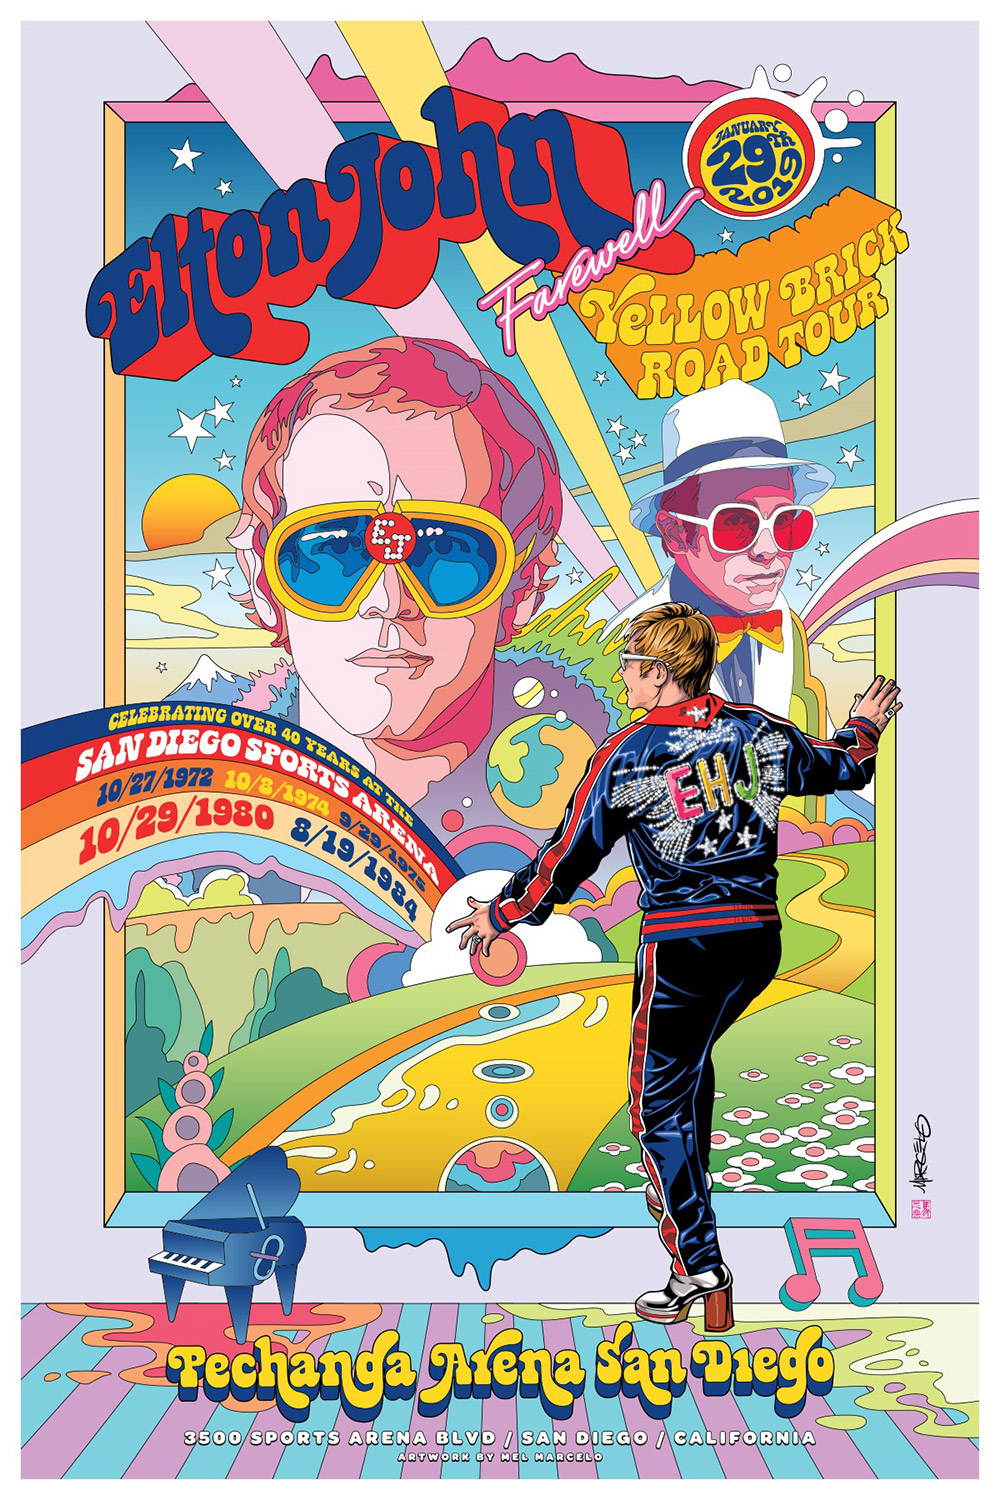 Elton John illustration by Mel Marcelo